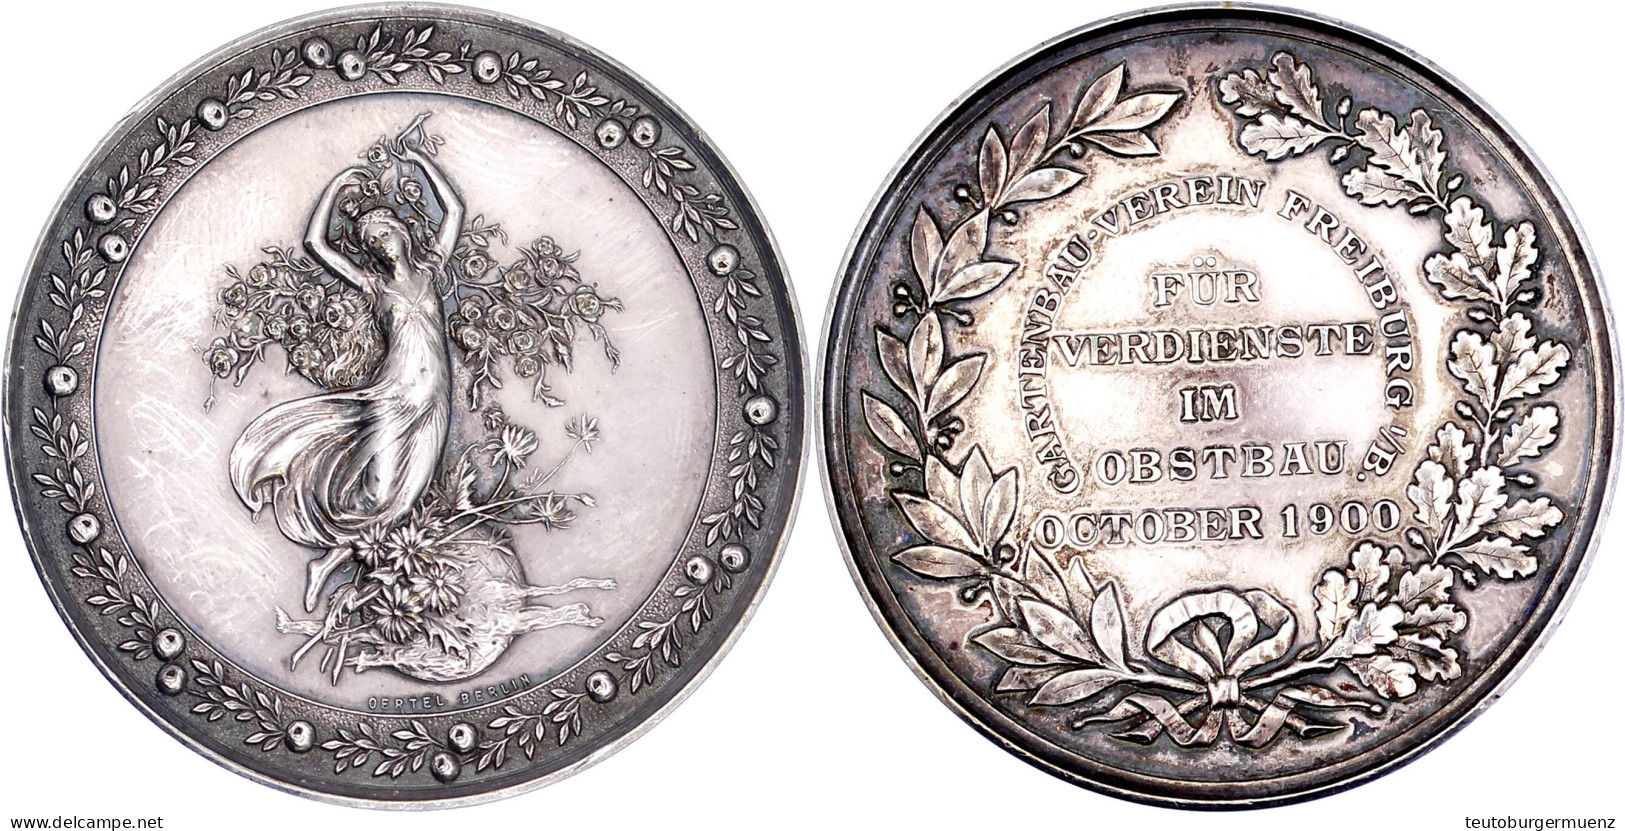 Silbermedaille Des Gartenbau-Vereins Freiburg I.B. 1900, Für Verdienste Im Obstbau Oktober 1900. Fortuna Auf Blumenkorb, - Gold Coins